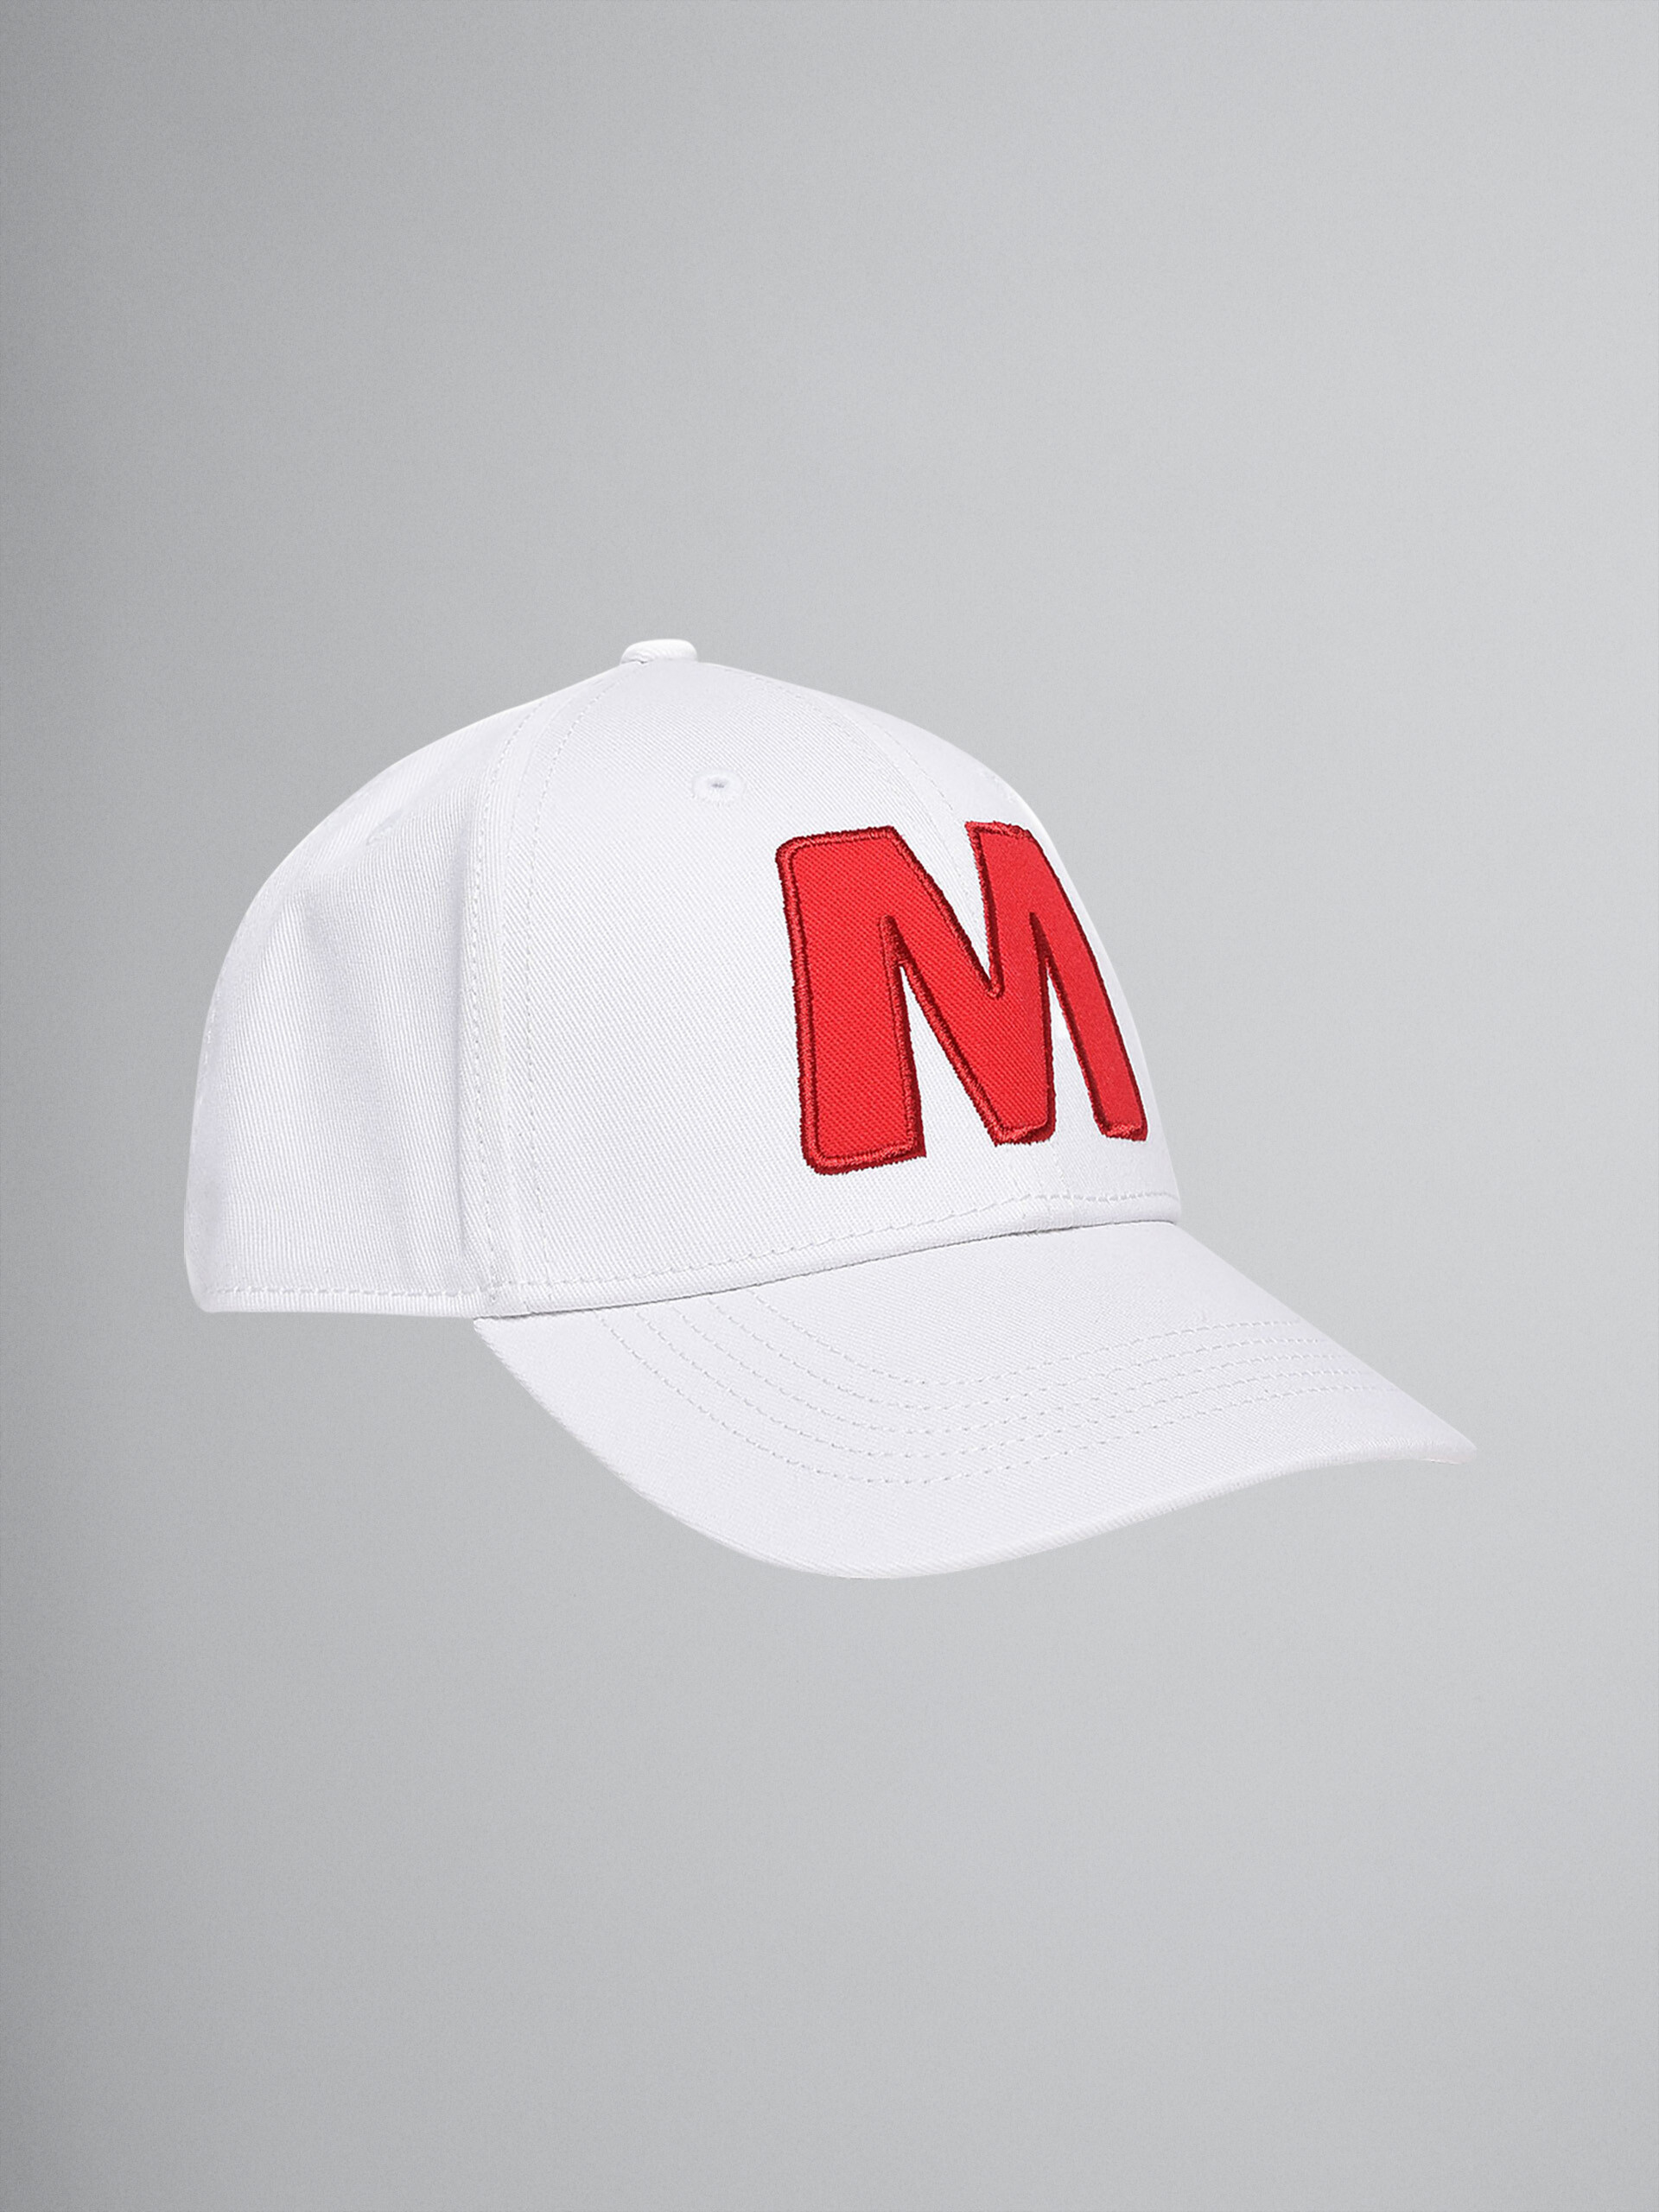 Cappello da baseball "M" in cotone bianco - Cappello - Image 1